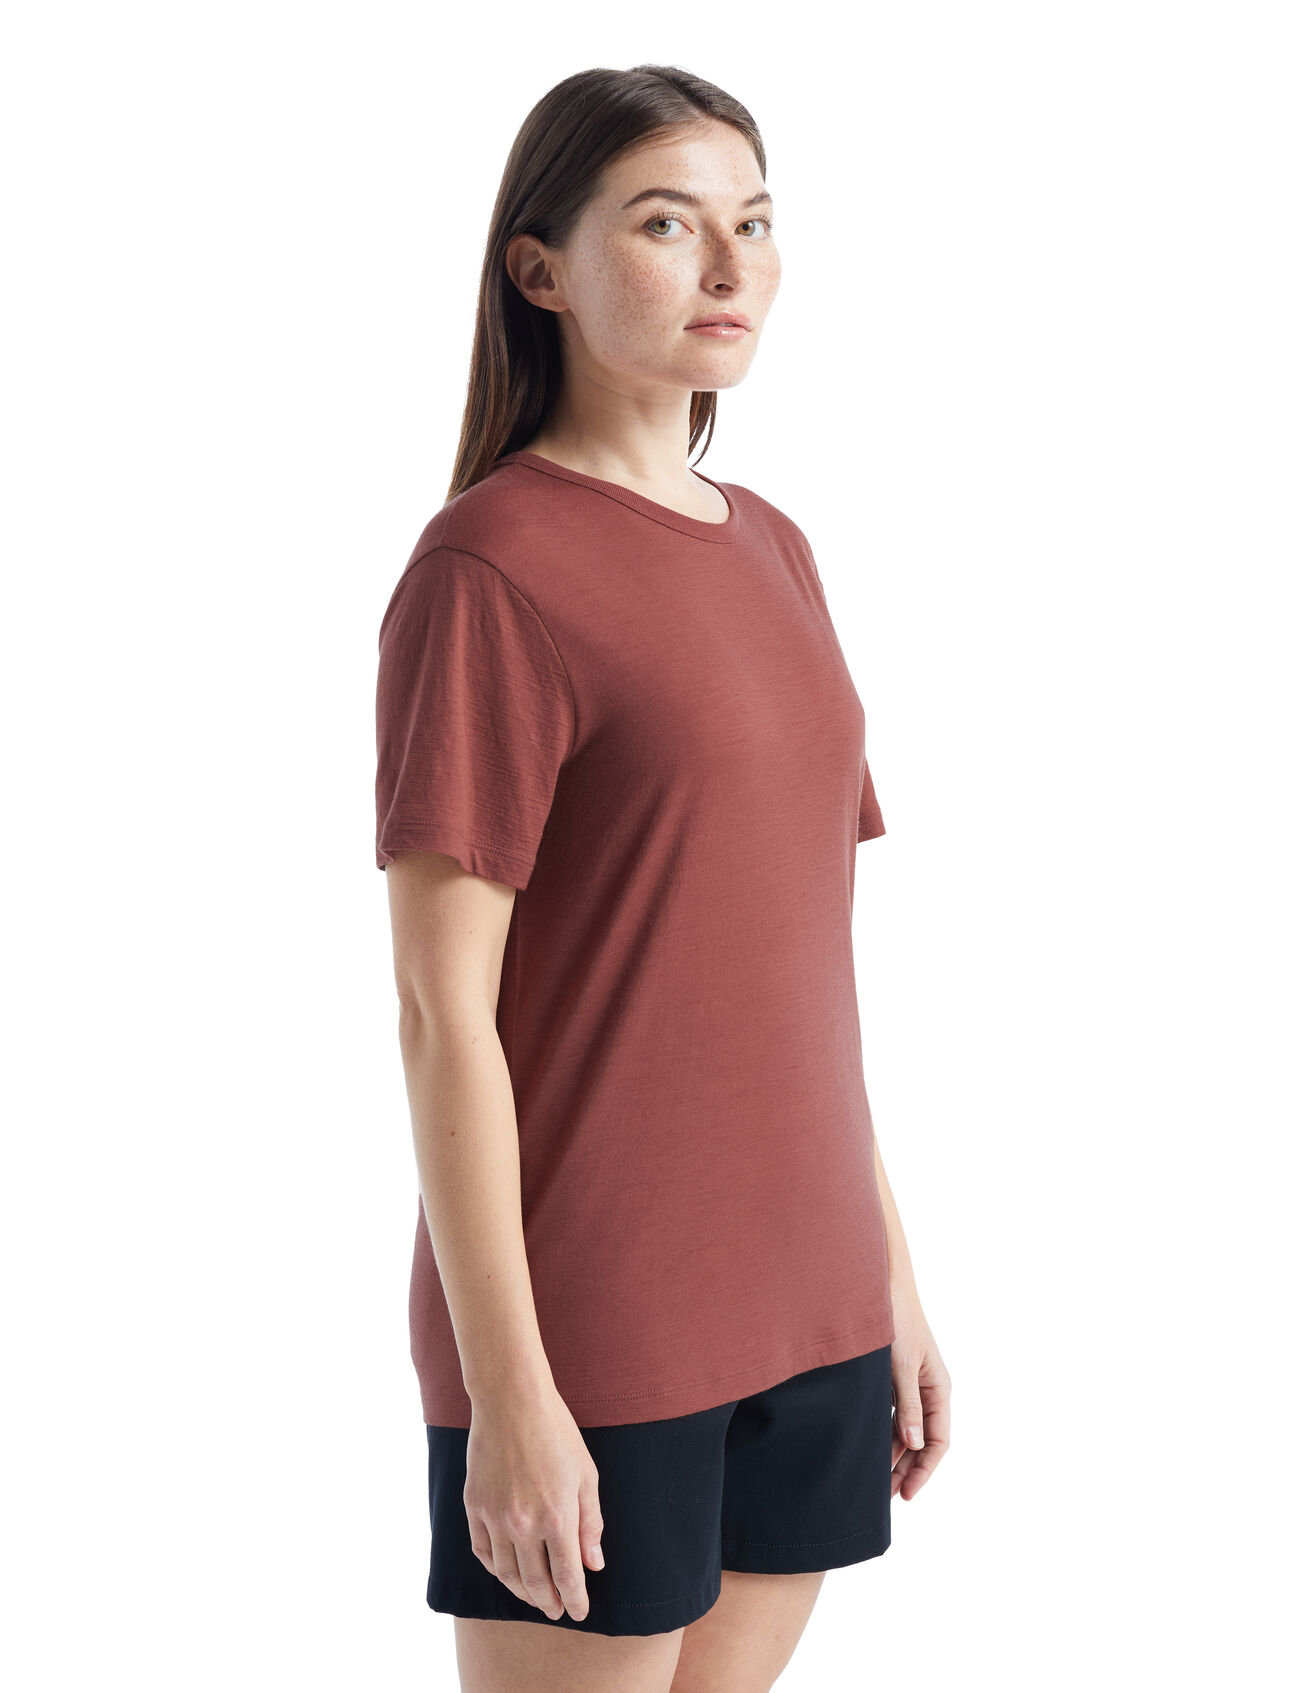 Dam Granary kortärmad t-shirt i merino Granary kortärmad t-shirt är en klassisk tröja med en avslappnad passform och mjuk, ventilerande 100% merinoull. Det är ett självklart plagg för vardaglig komfort och stil. 